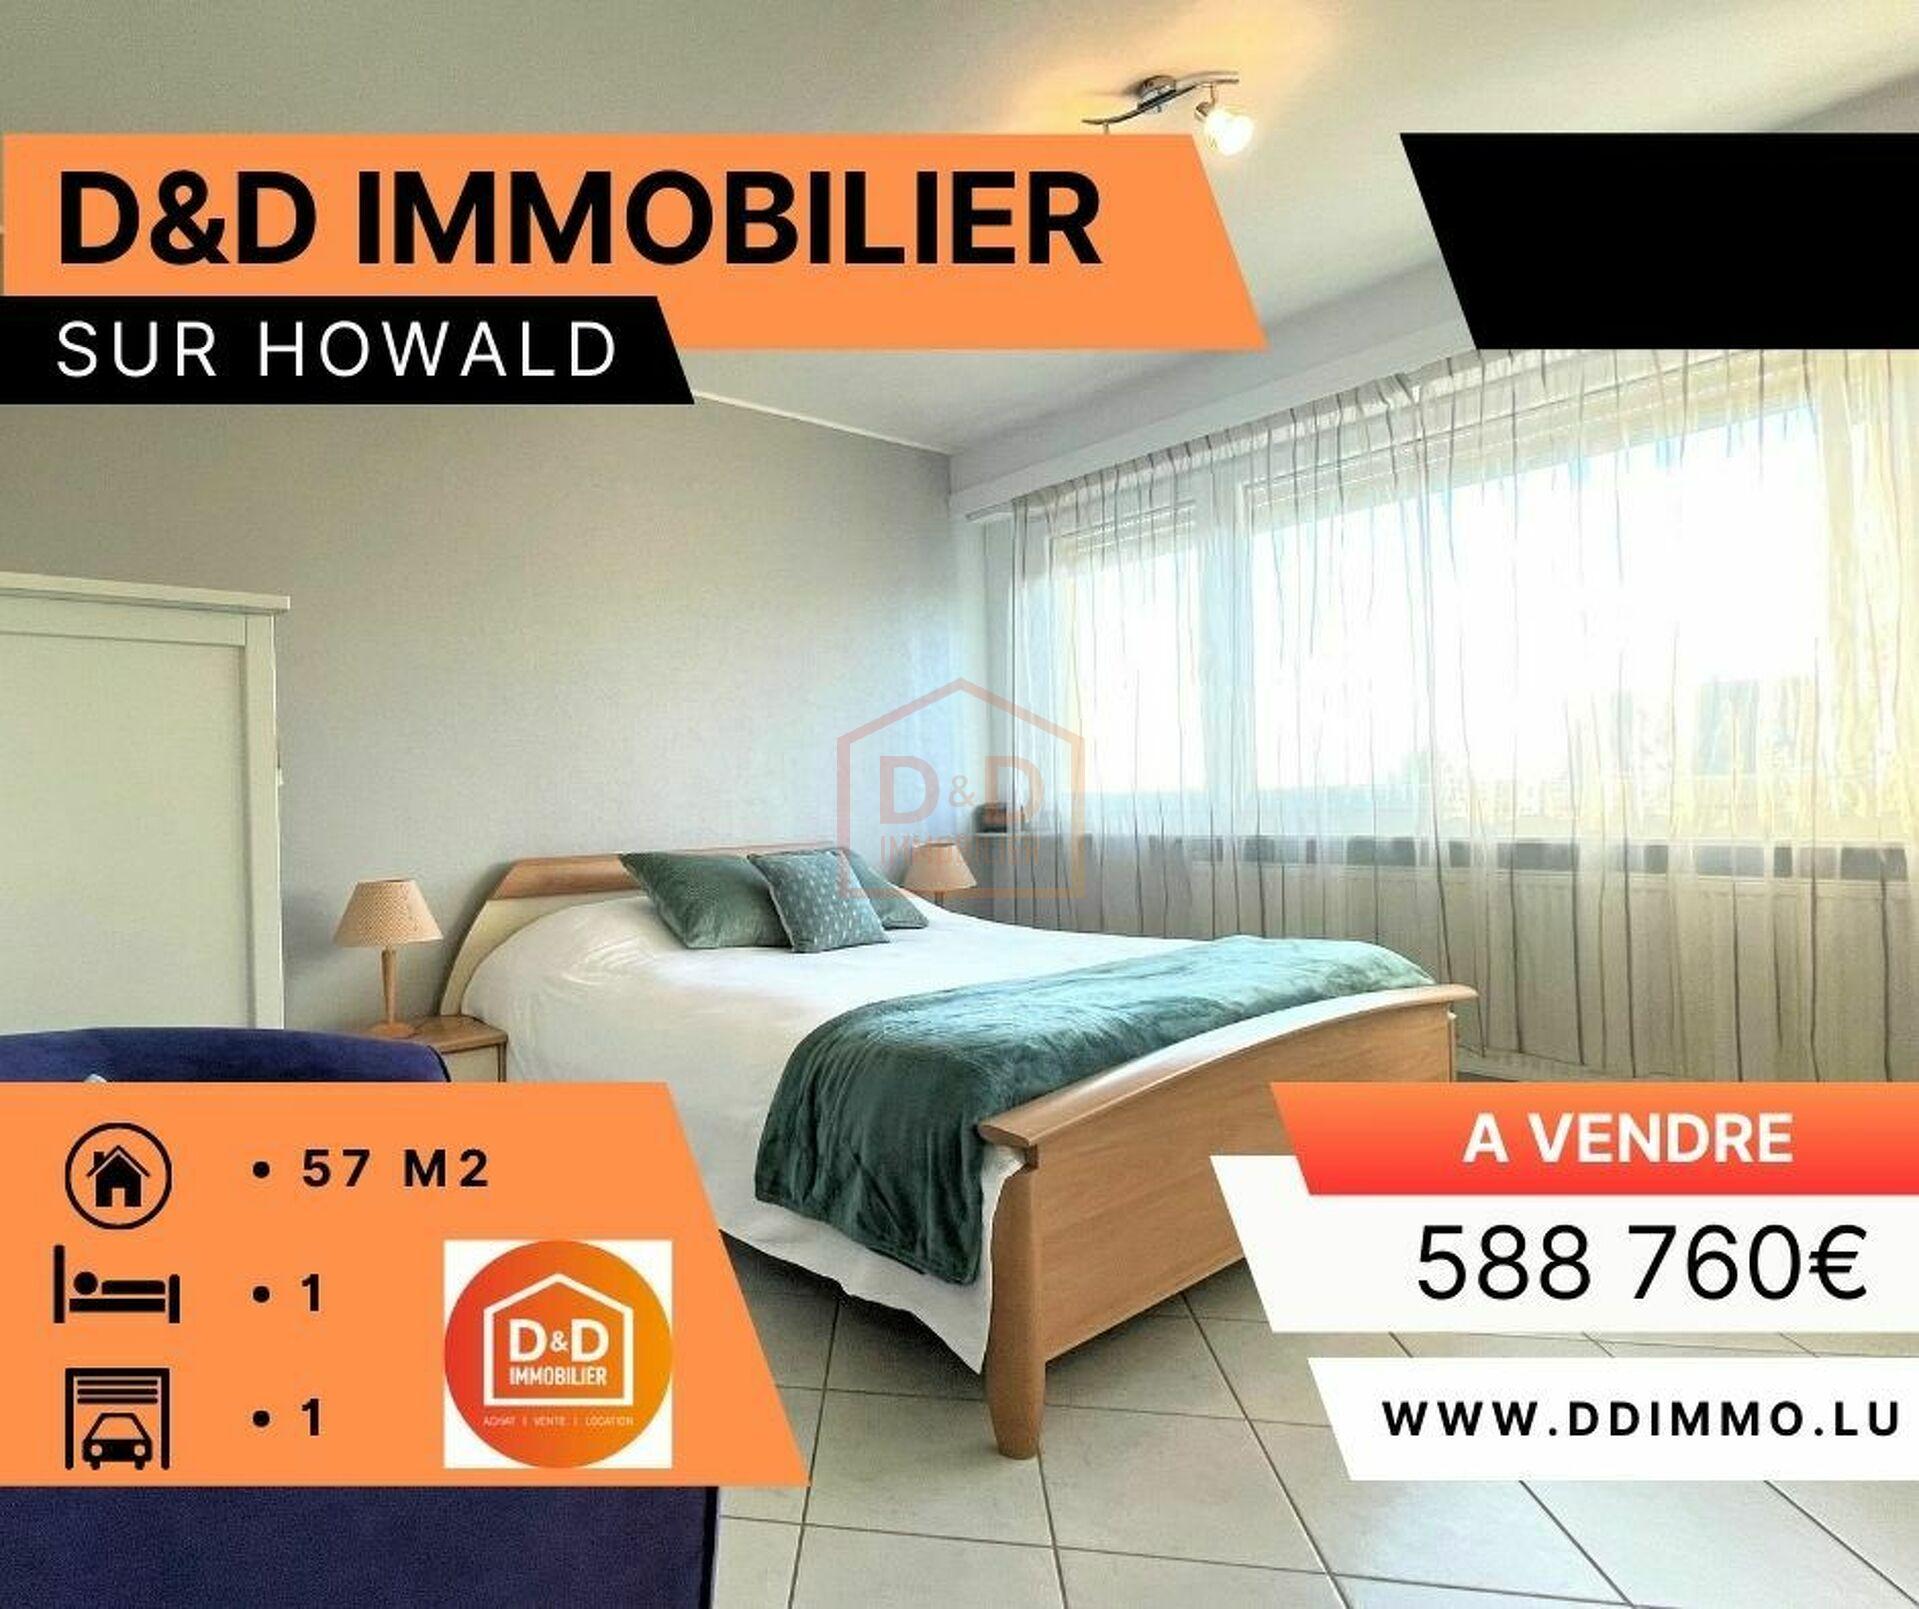 Appartement à Howald, 57 m², 1 chambre, 1 garage, 588 760 €